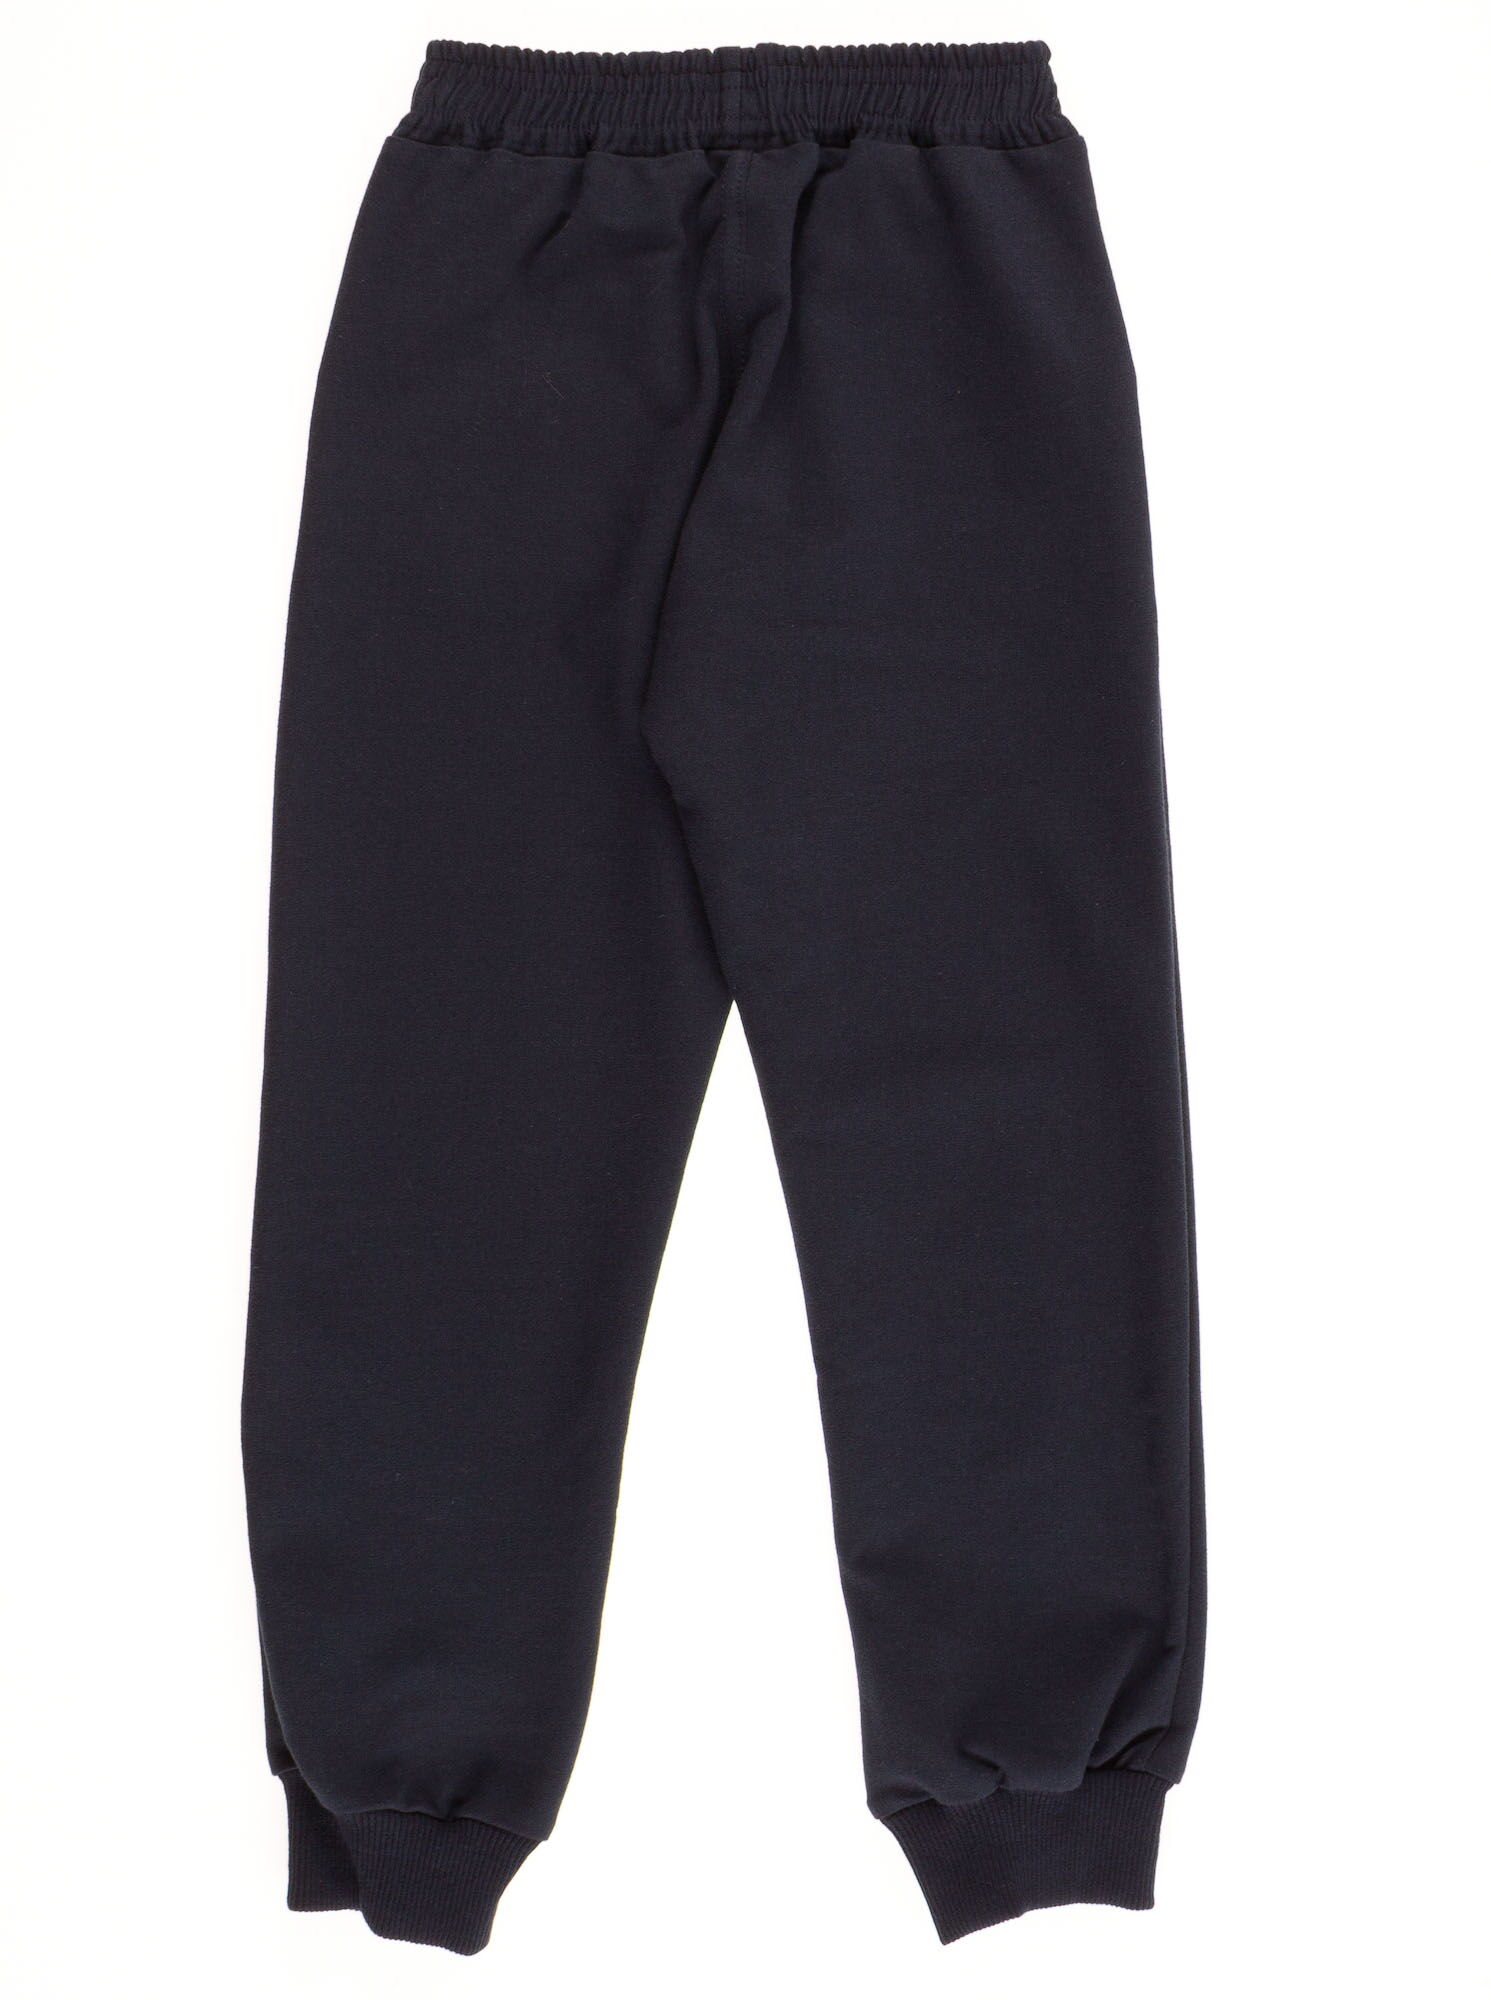 Спортивные штаны для мальчика Adidas темно-синие  - фото